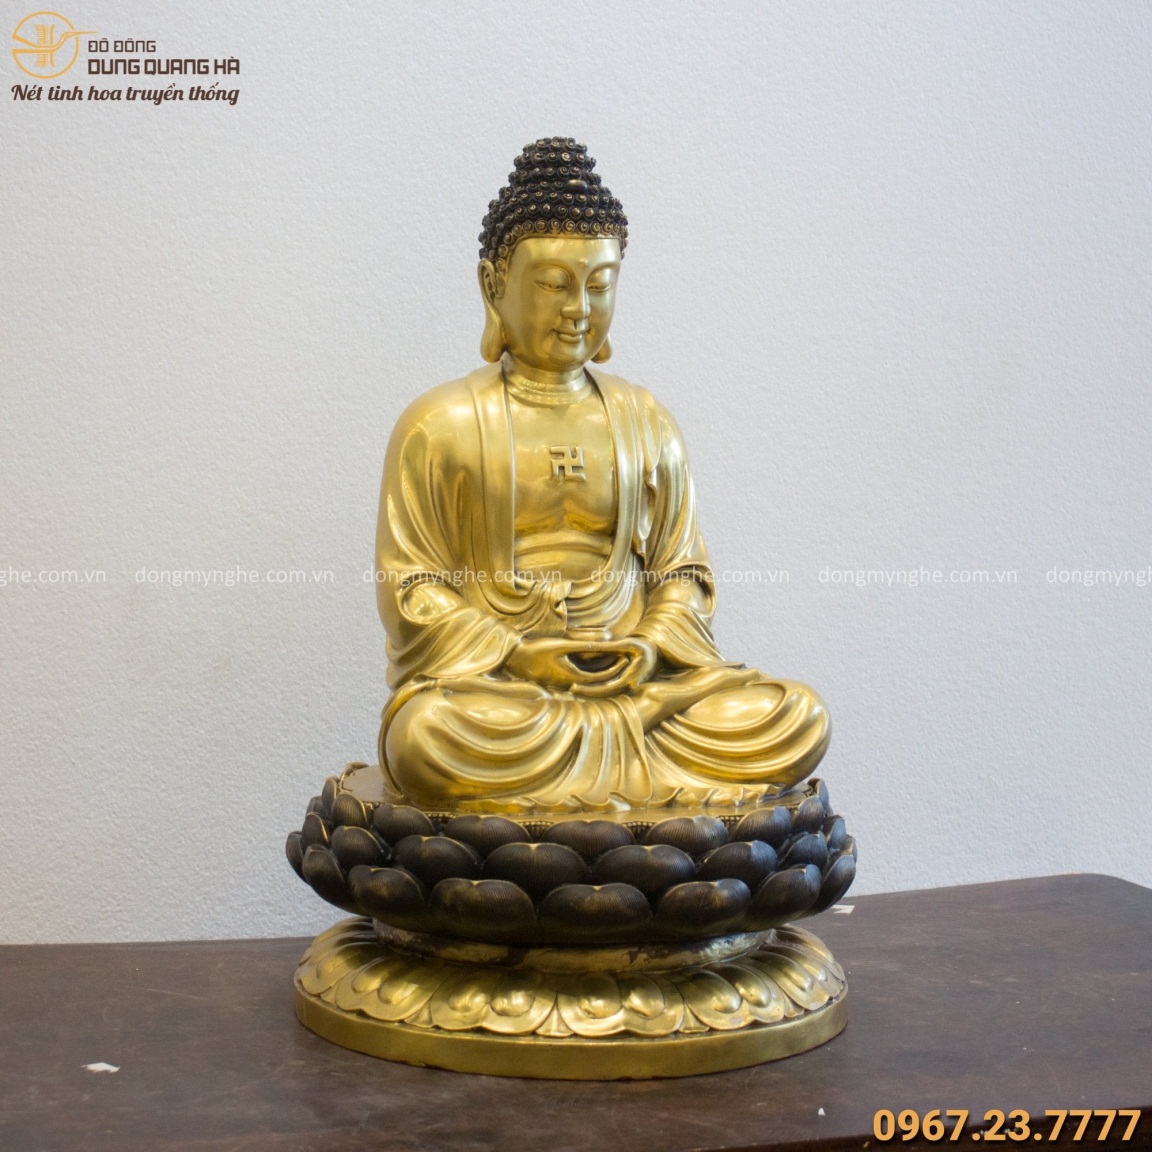 Tượng Phật A Di Đà ngồi trên đài sen cao 60cm bằng đồng vàng